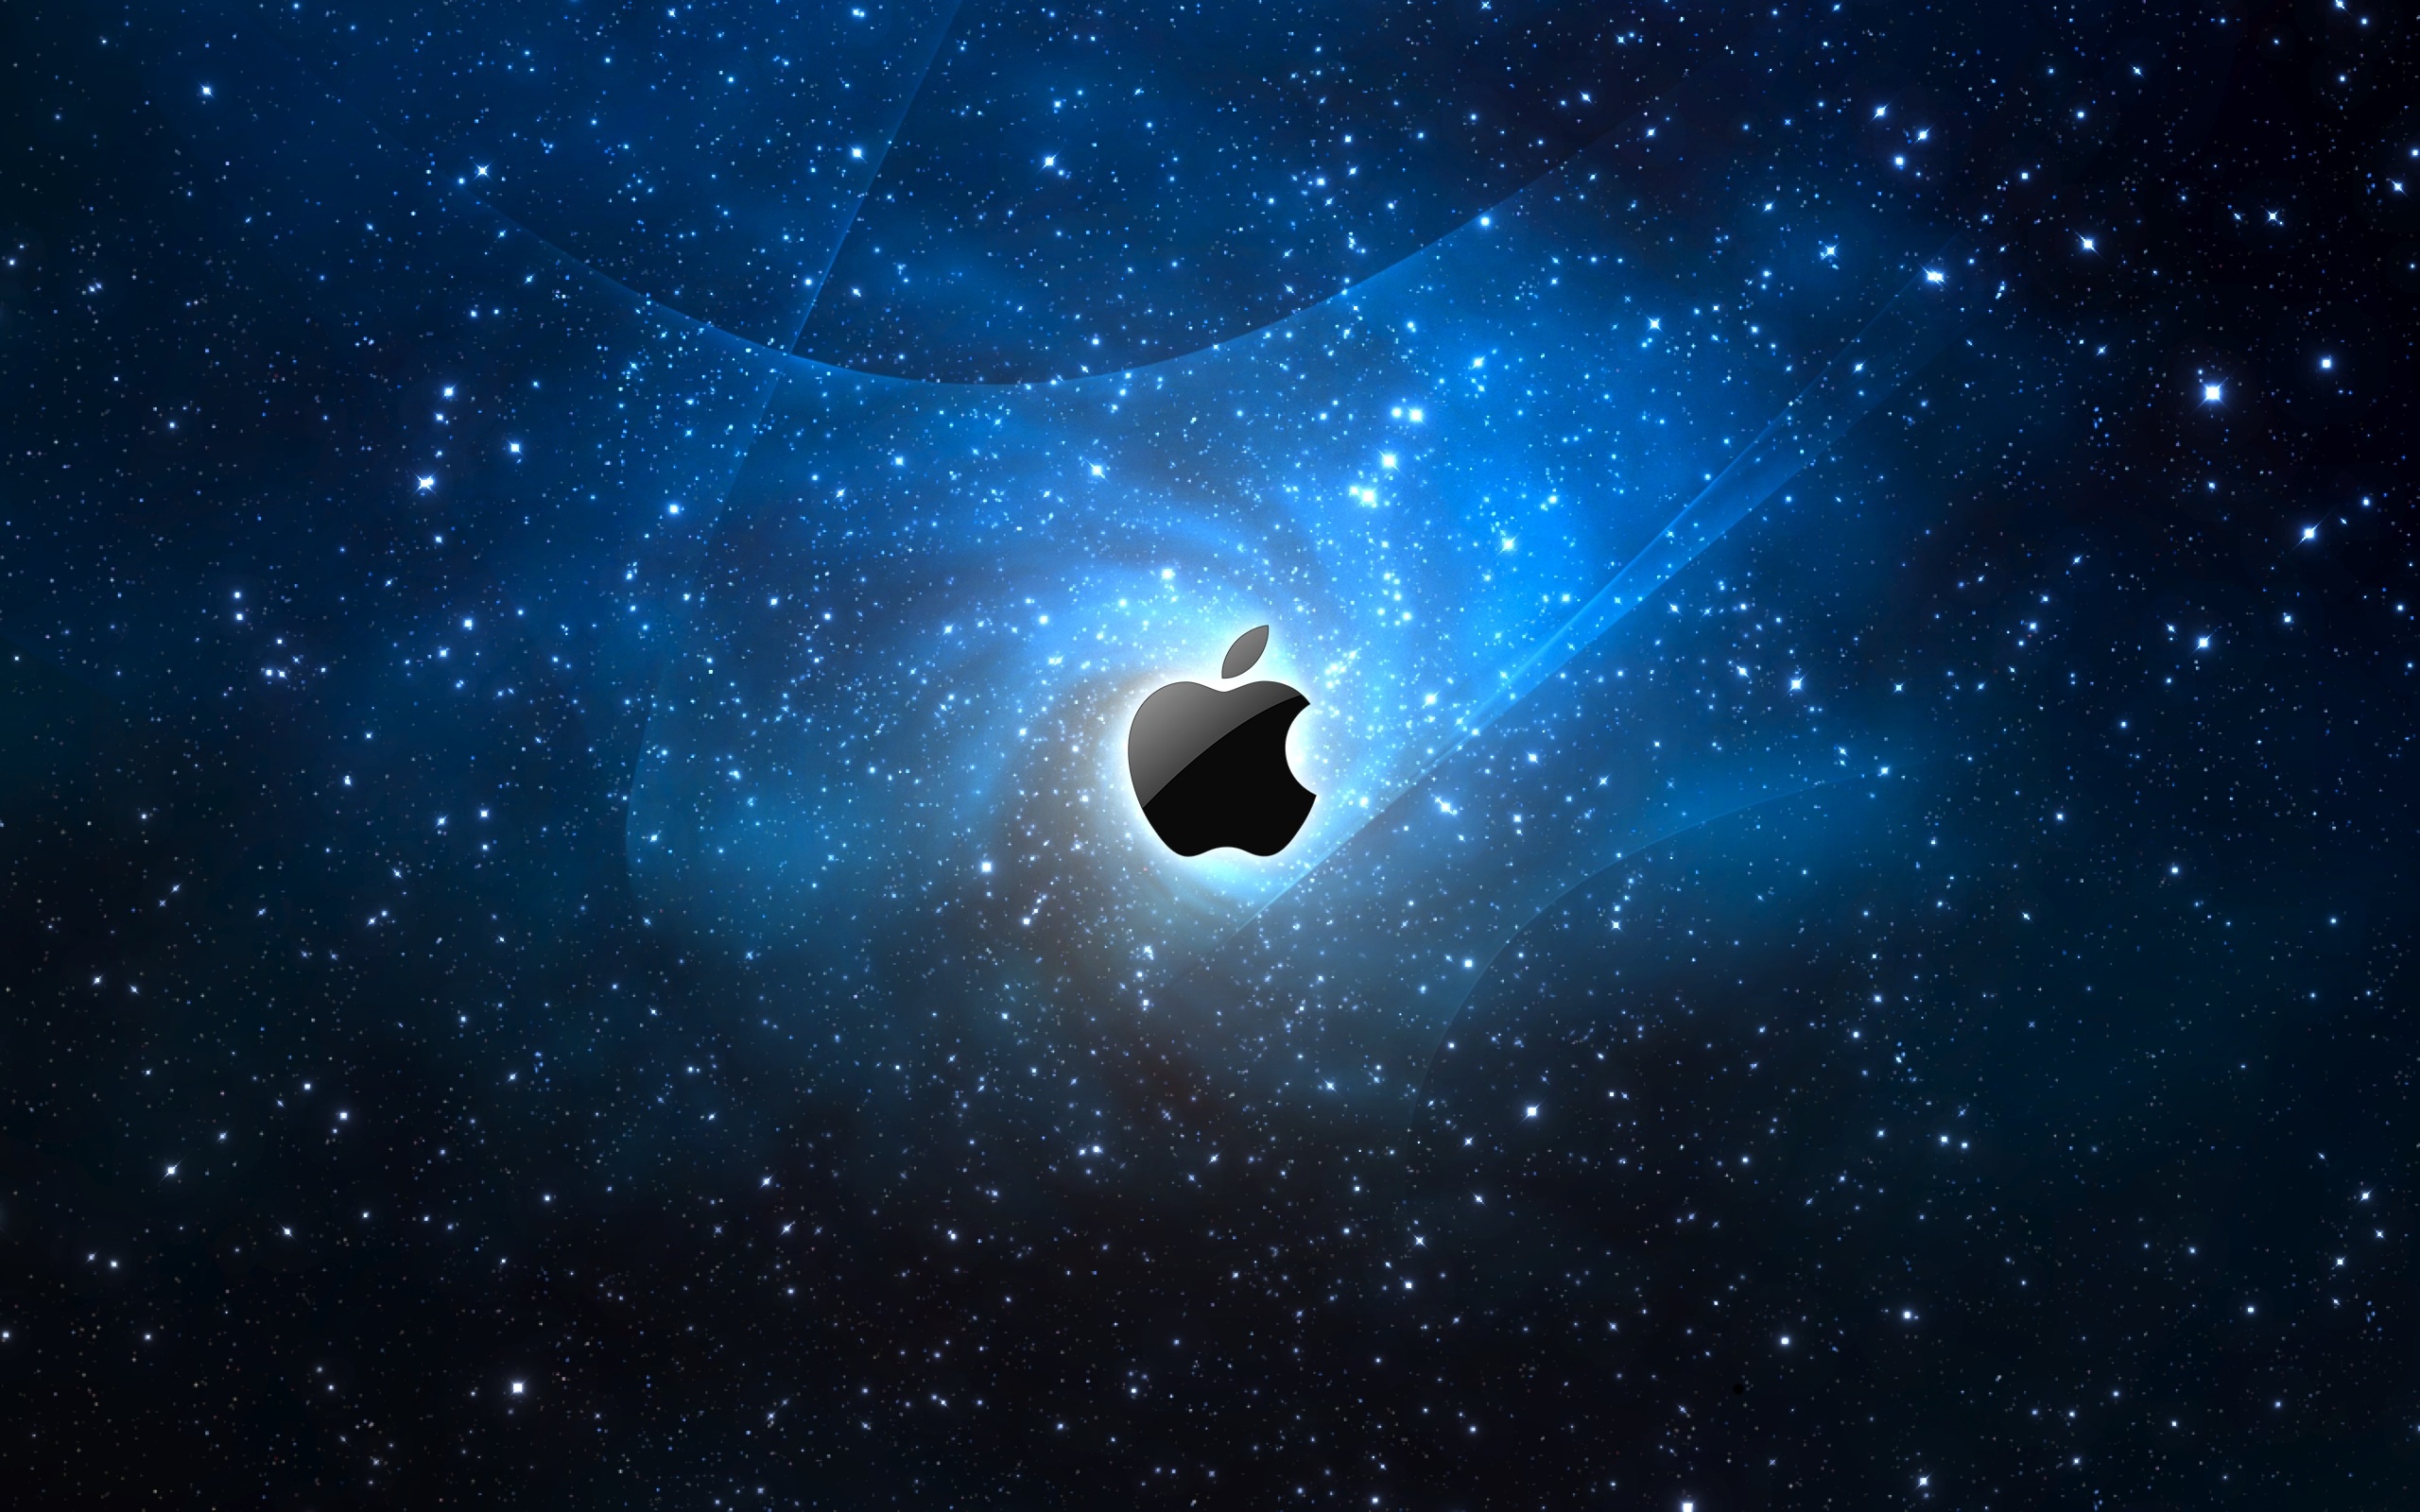 Hình nền máy tính Apple in the Galaxy sẽ đưa bạn vào một thế giới khác, với những tinh tú và sao trên nền đen lấp lánh. Cảm nhận được sự huyền bí và độc đáo của không gian vũ trụ, cùng thưởng thức những bức ảnh này để thấy rõ sự khác biệt và đẳng cấp của chiếc máy tính của bạn.